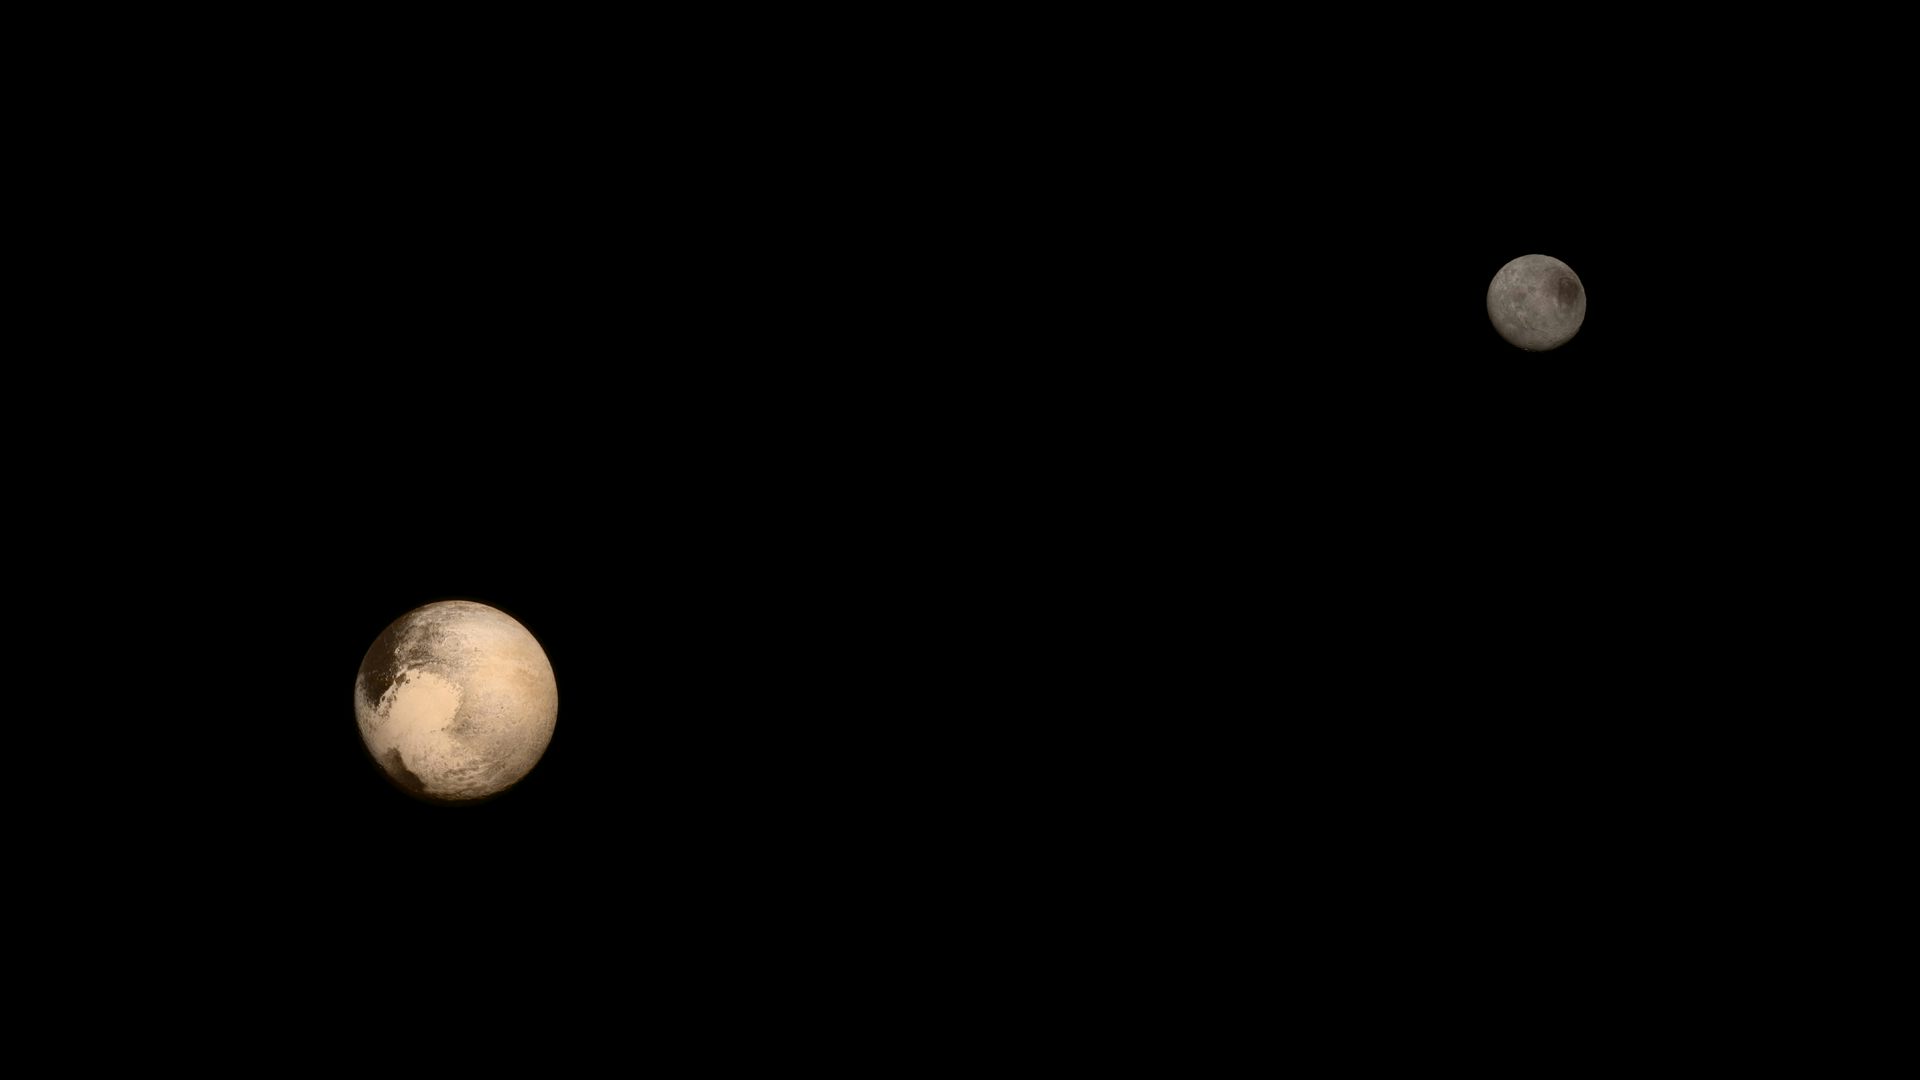 Изображение Плутона и одного из его пяти спутников Харона.